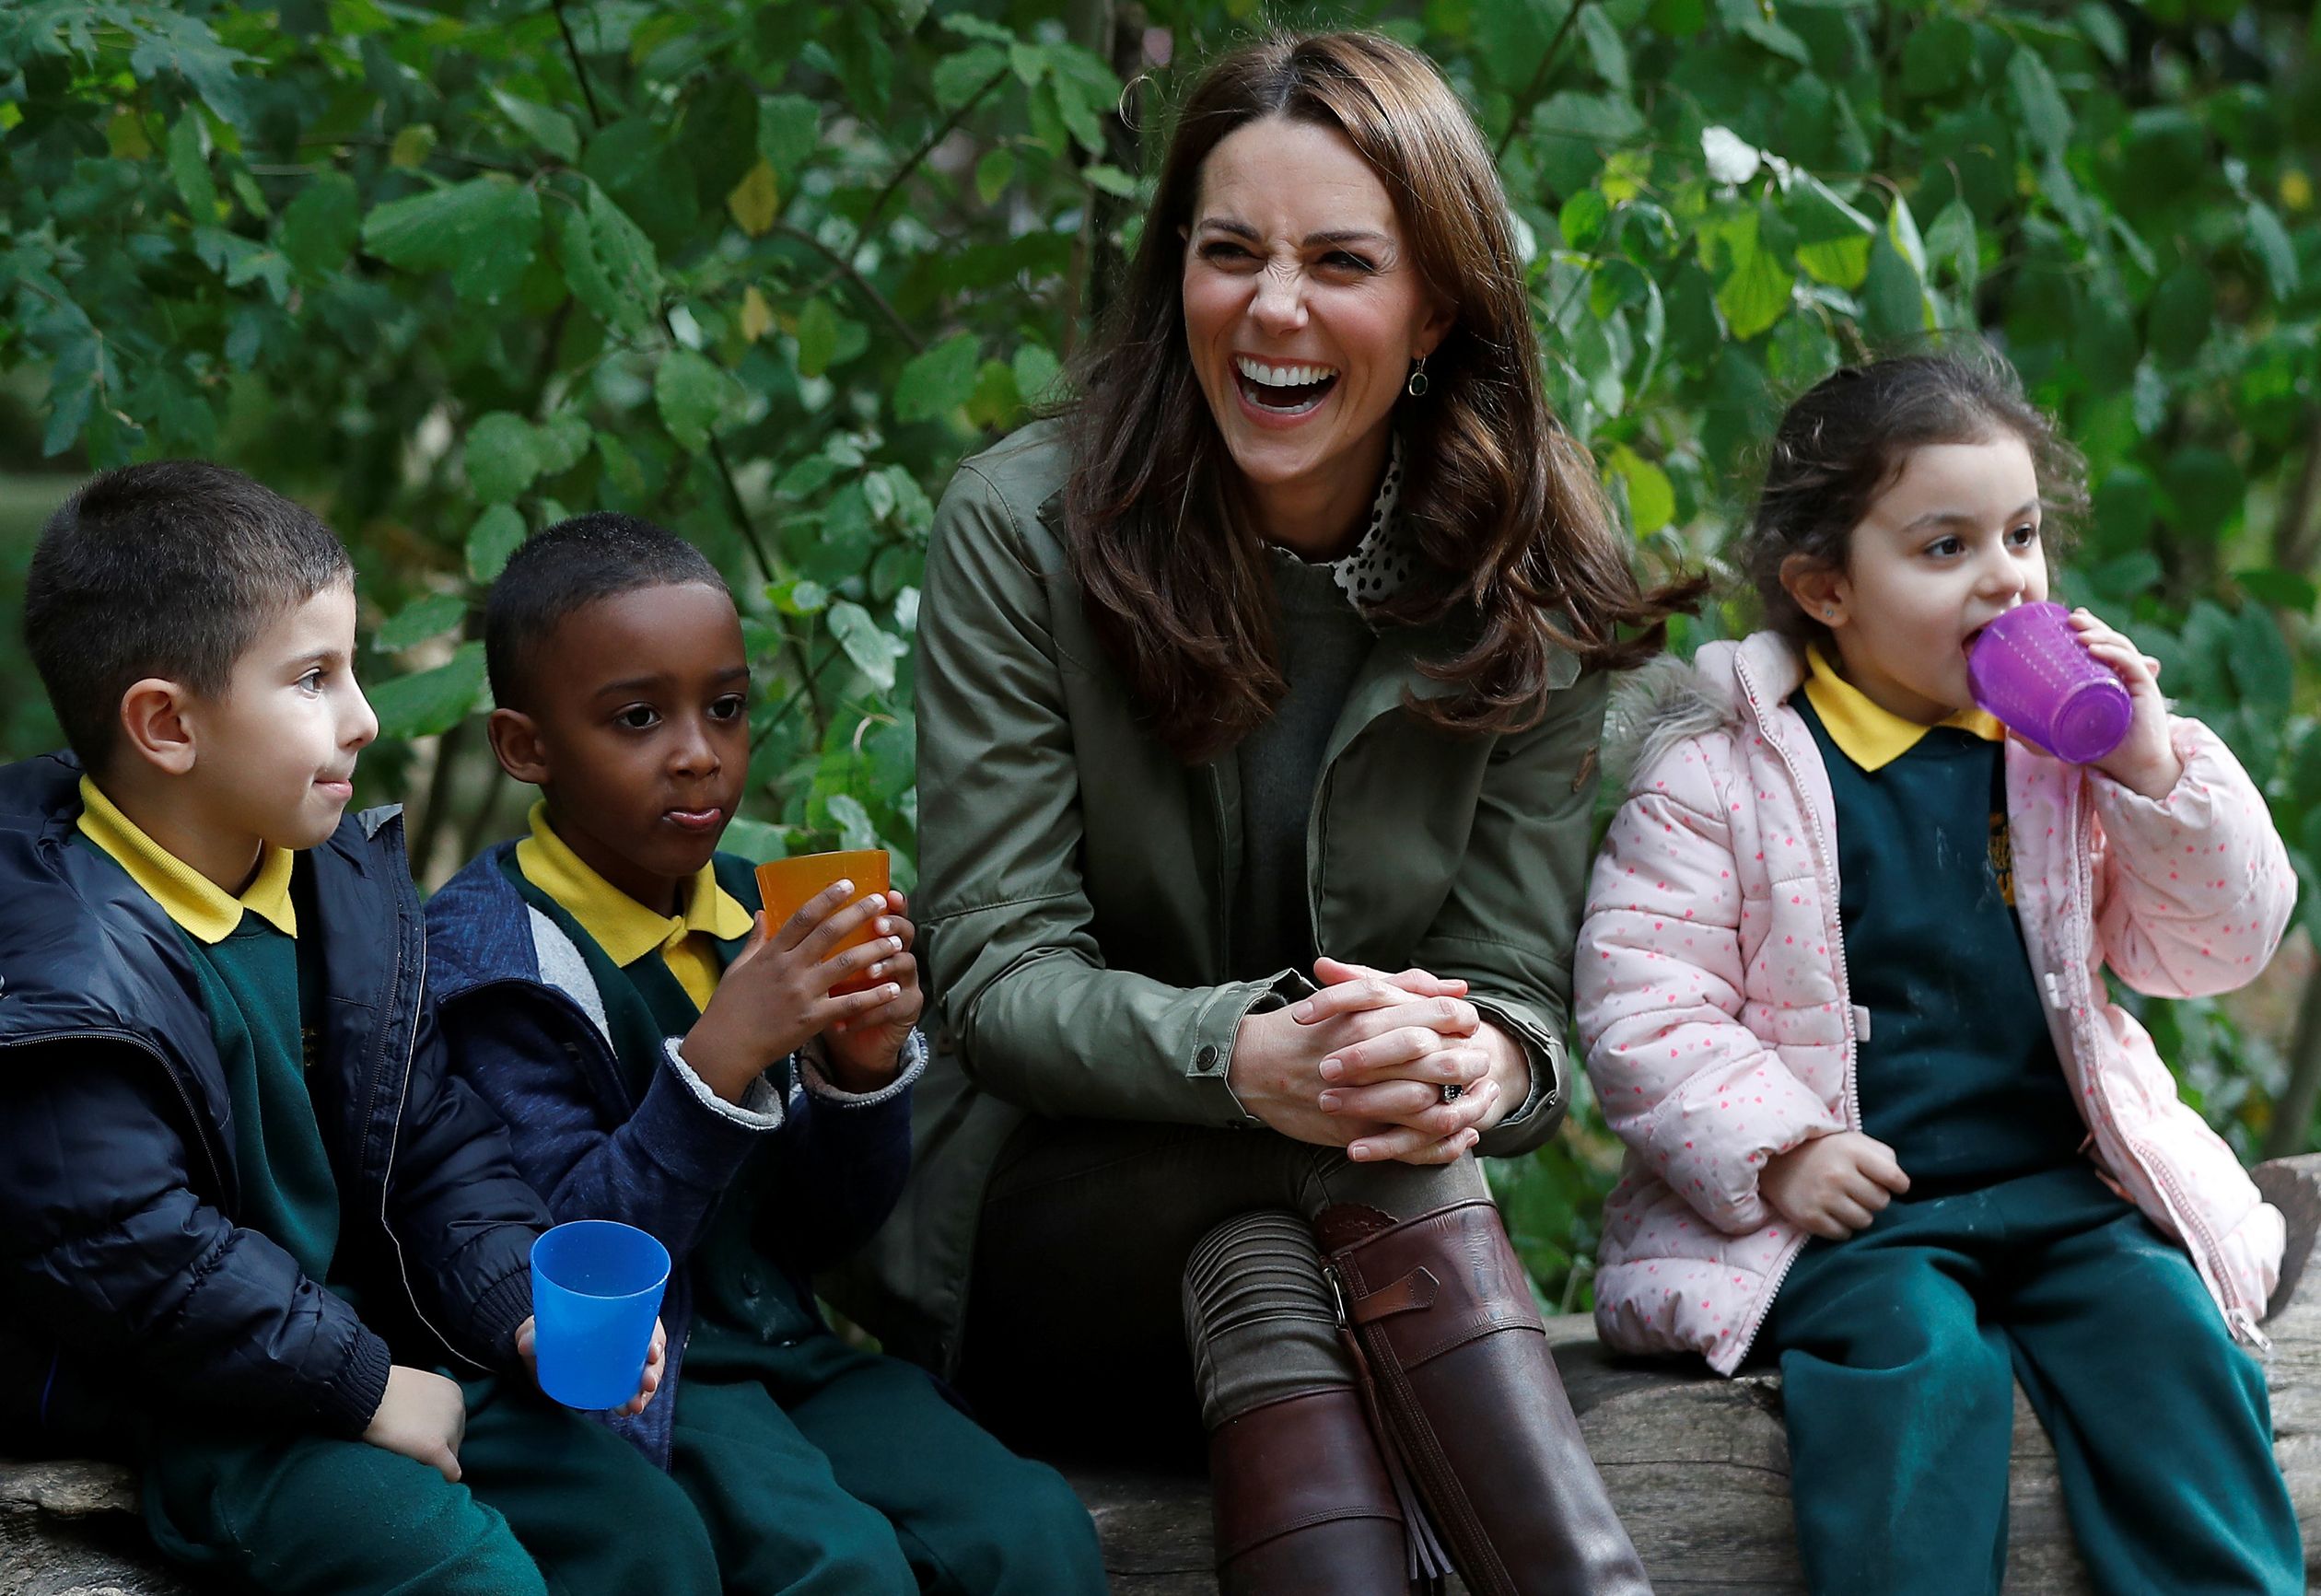 Catherine in haar element! In 2018 bezoekt ze  de Sayers Croft Forest School en Wildlife Garden in